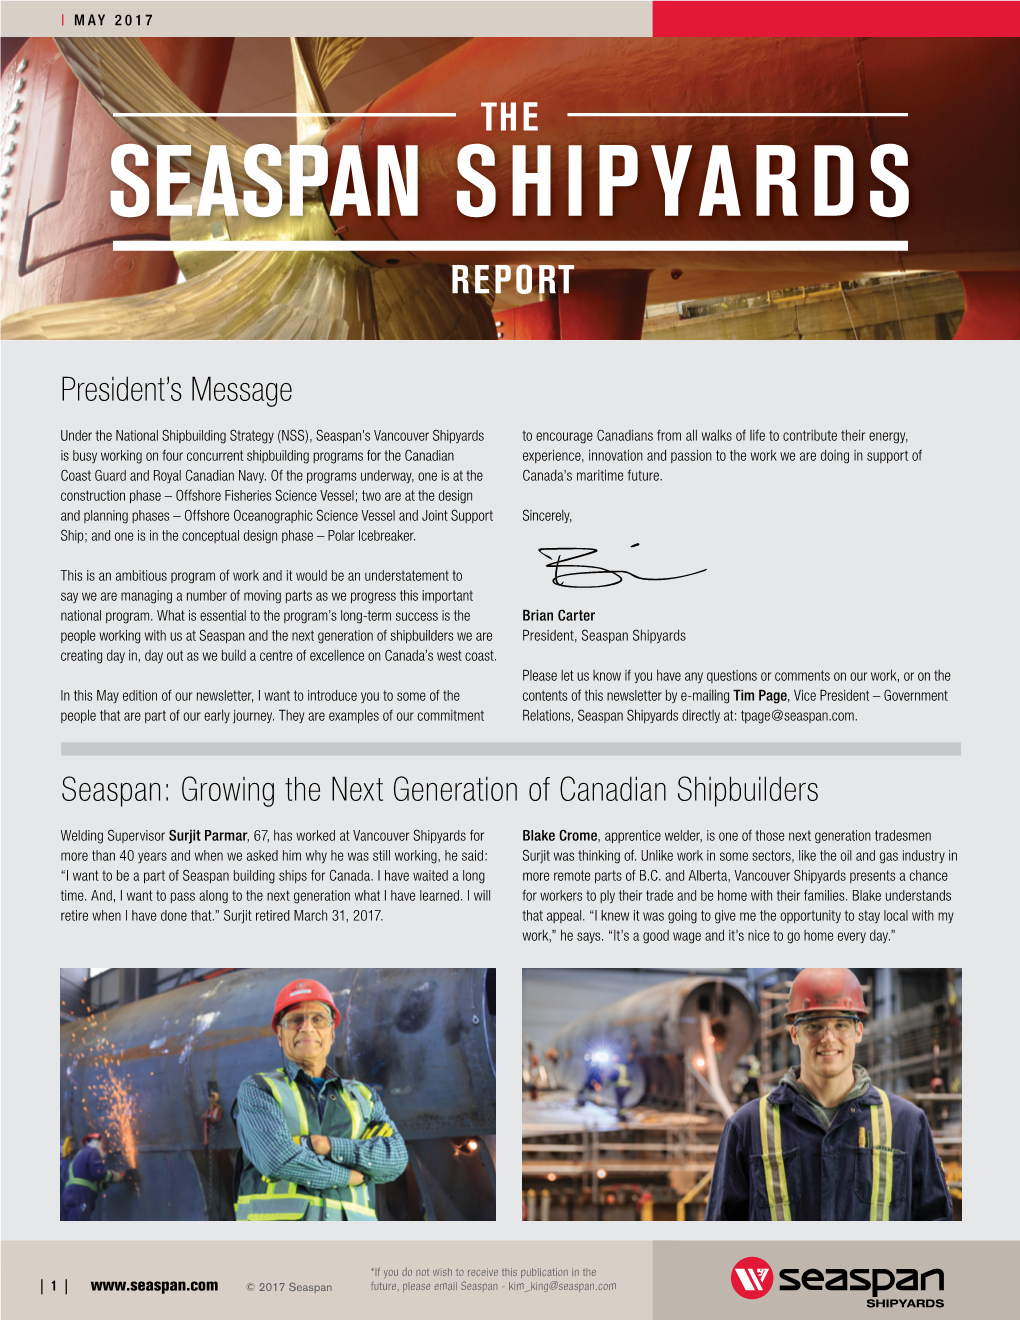 Seaspan Shipyards Report